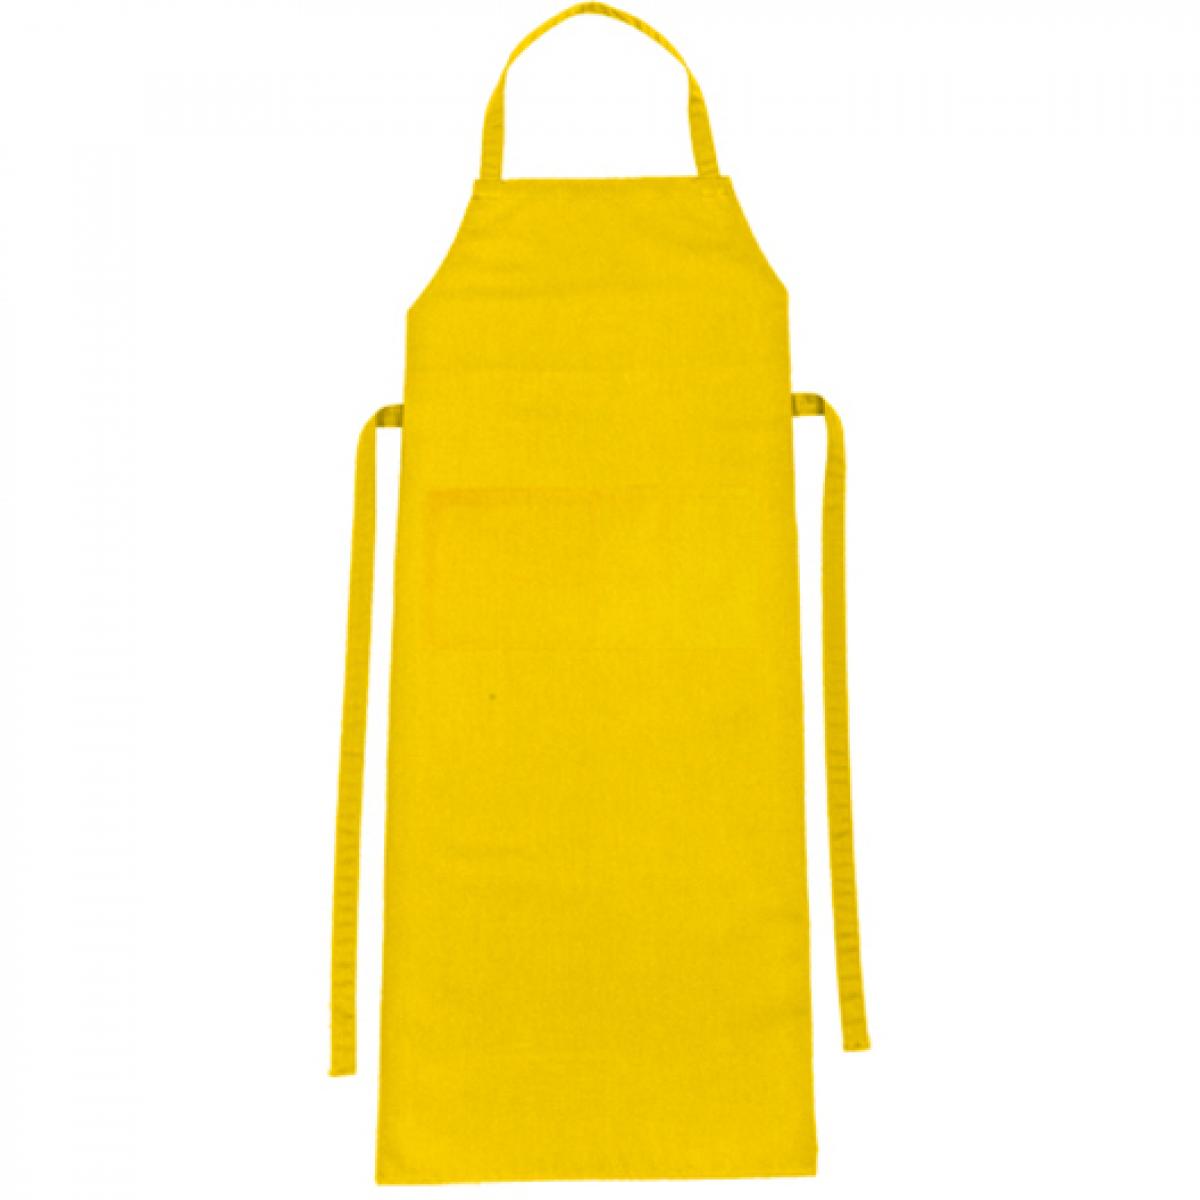 Hersteller: CG Workwear Herstellernummer: 01146-01 Artikelbezeichnung: Latzschürze Verona Classic Bag 90 x 75 cm Farbe: Sunshine